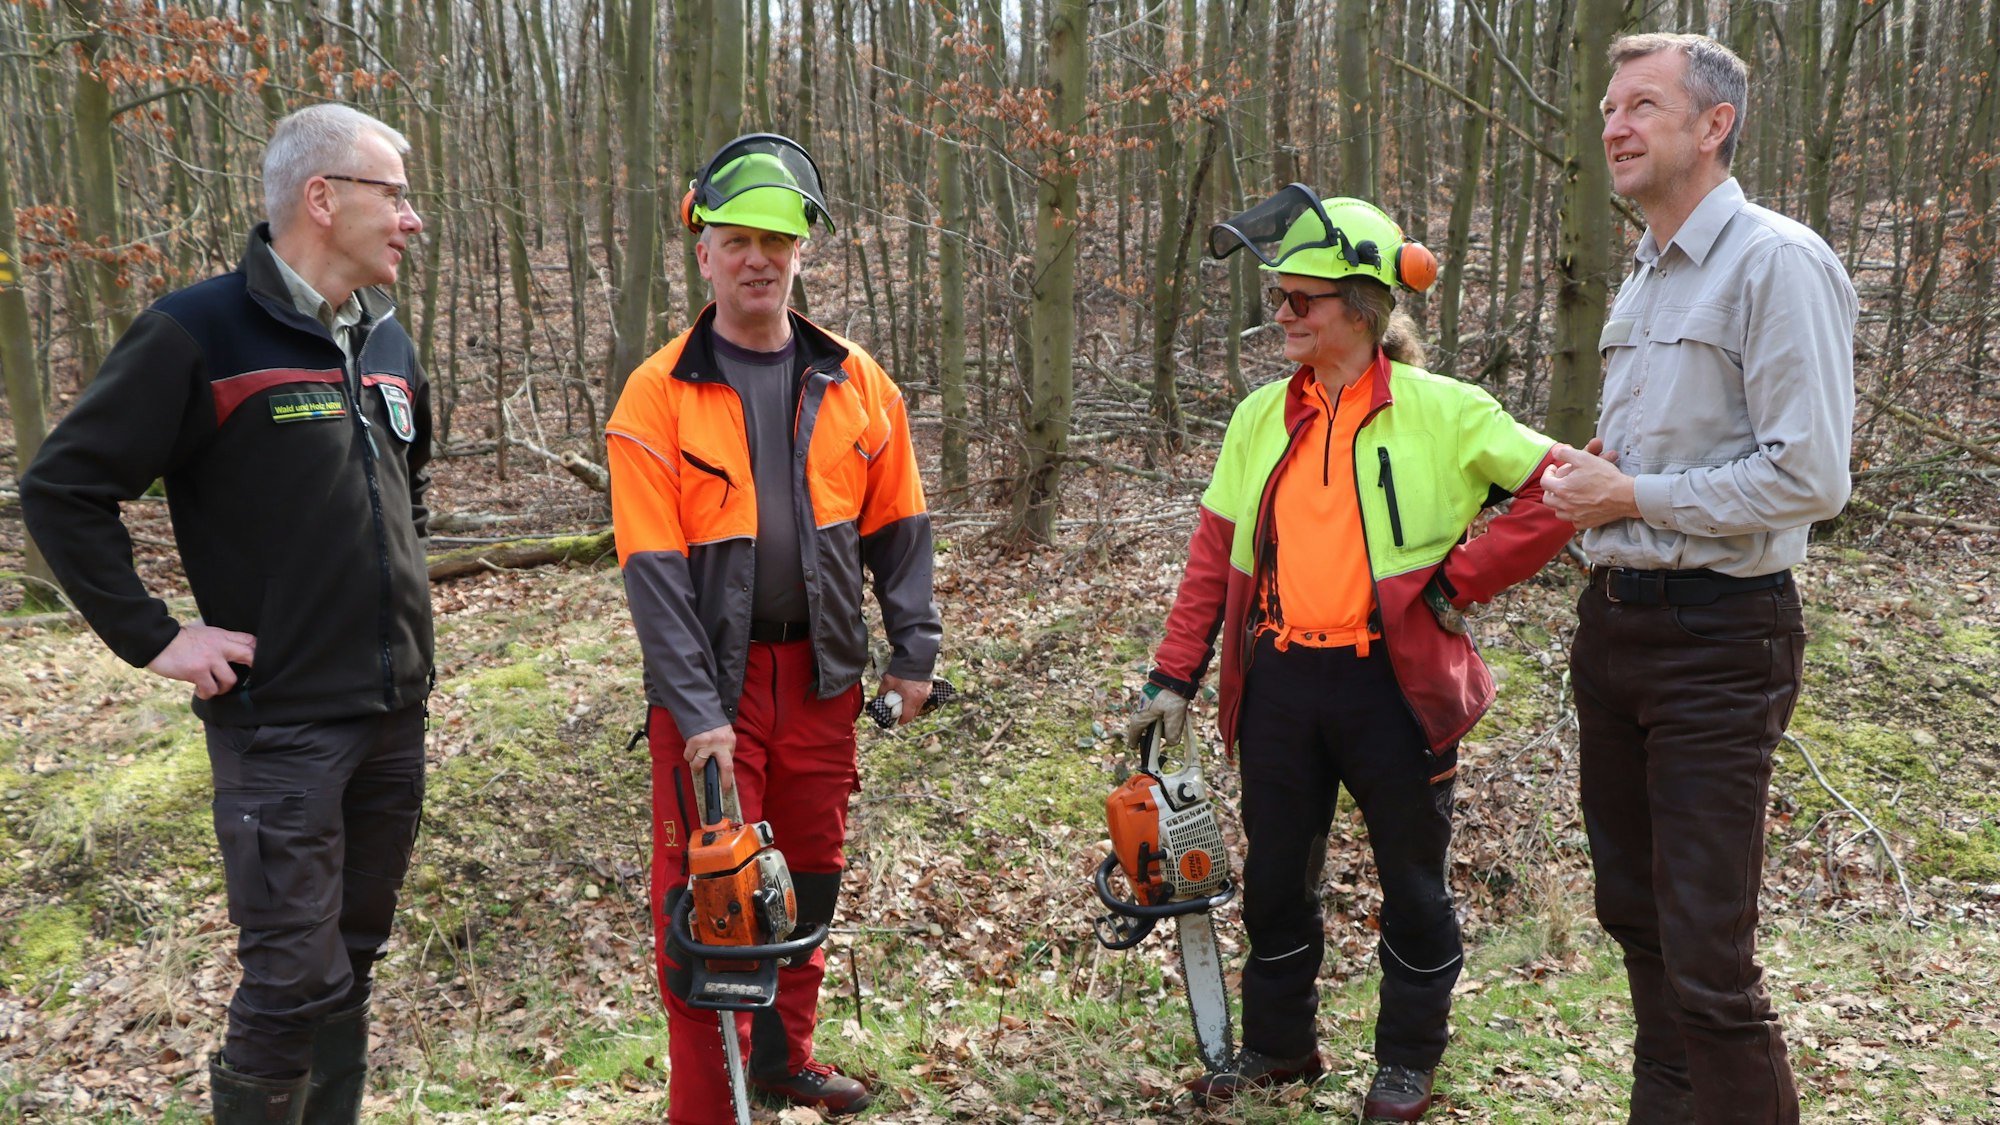 Forstamtsleiter Stephan Schütte mit Revierförster Frank Mayer und den Mitarbeitern, die aktuell im jungen Buchenwald arbeiten.